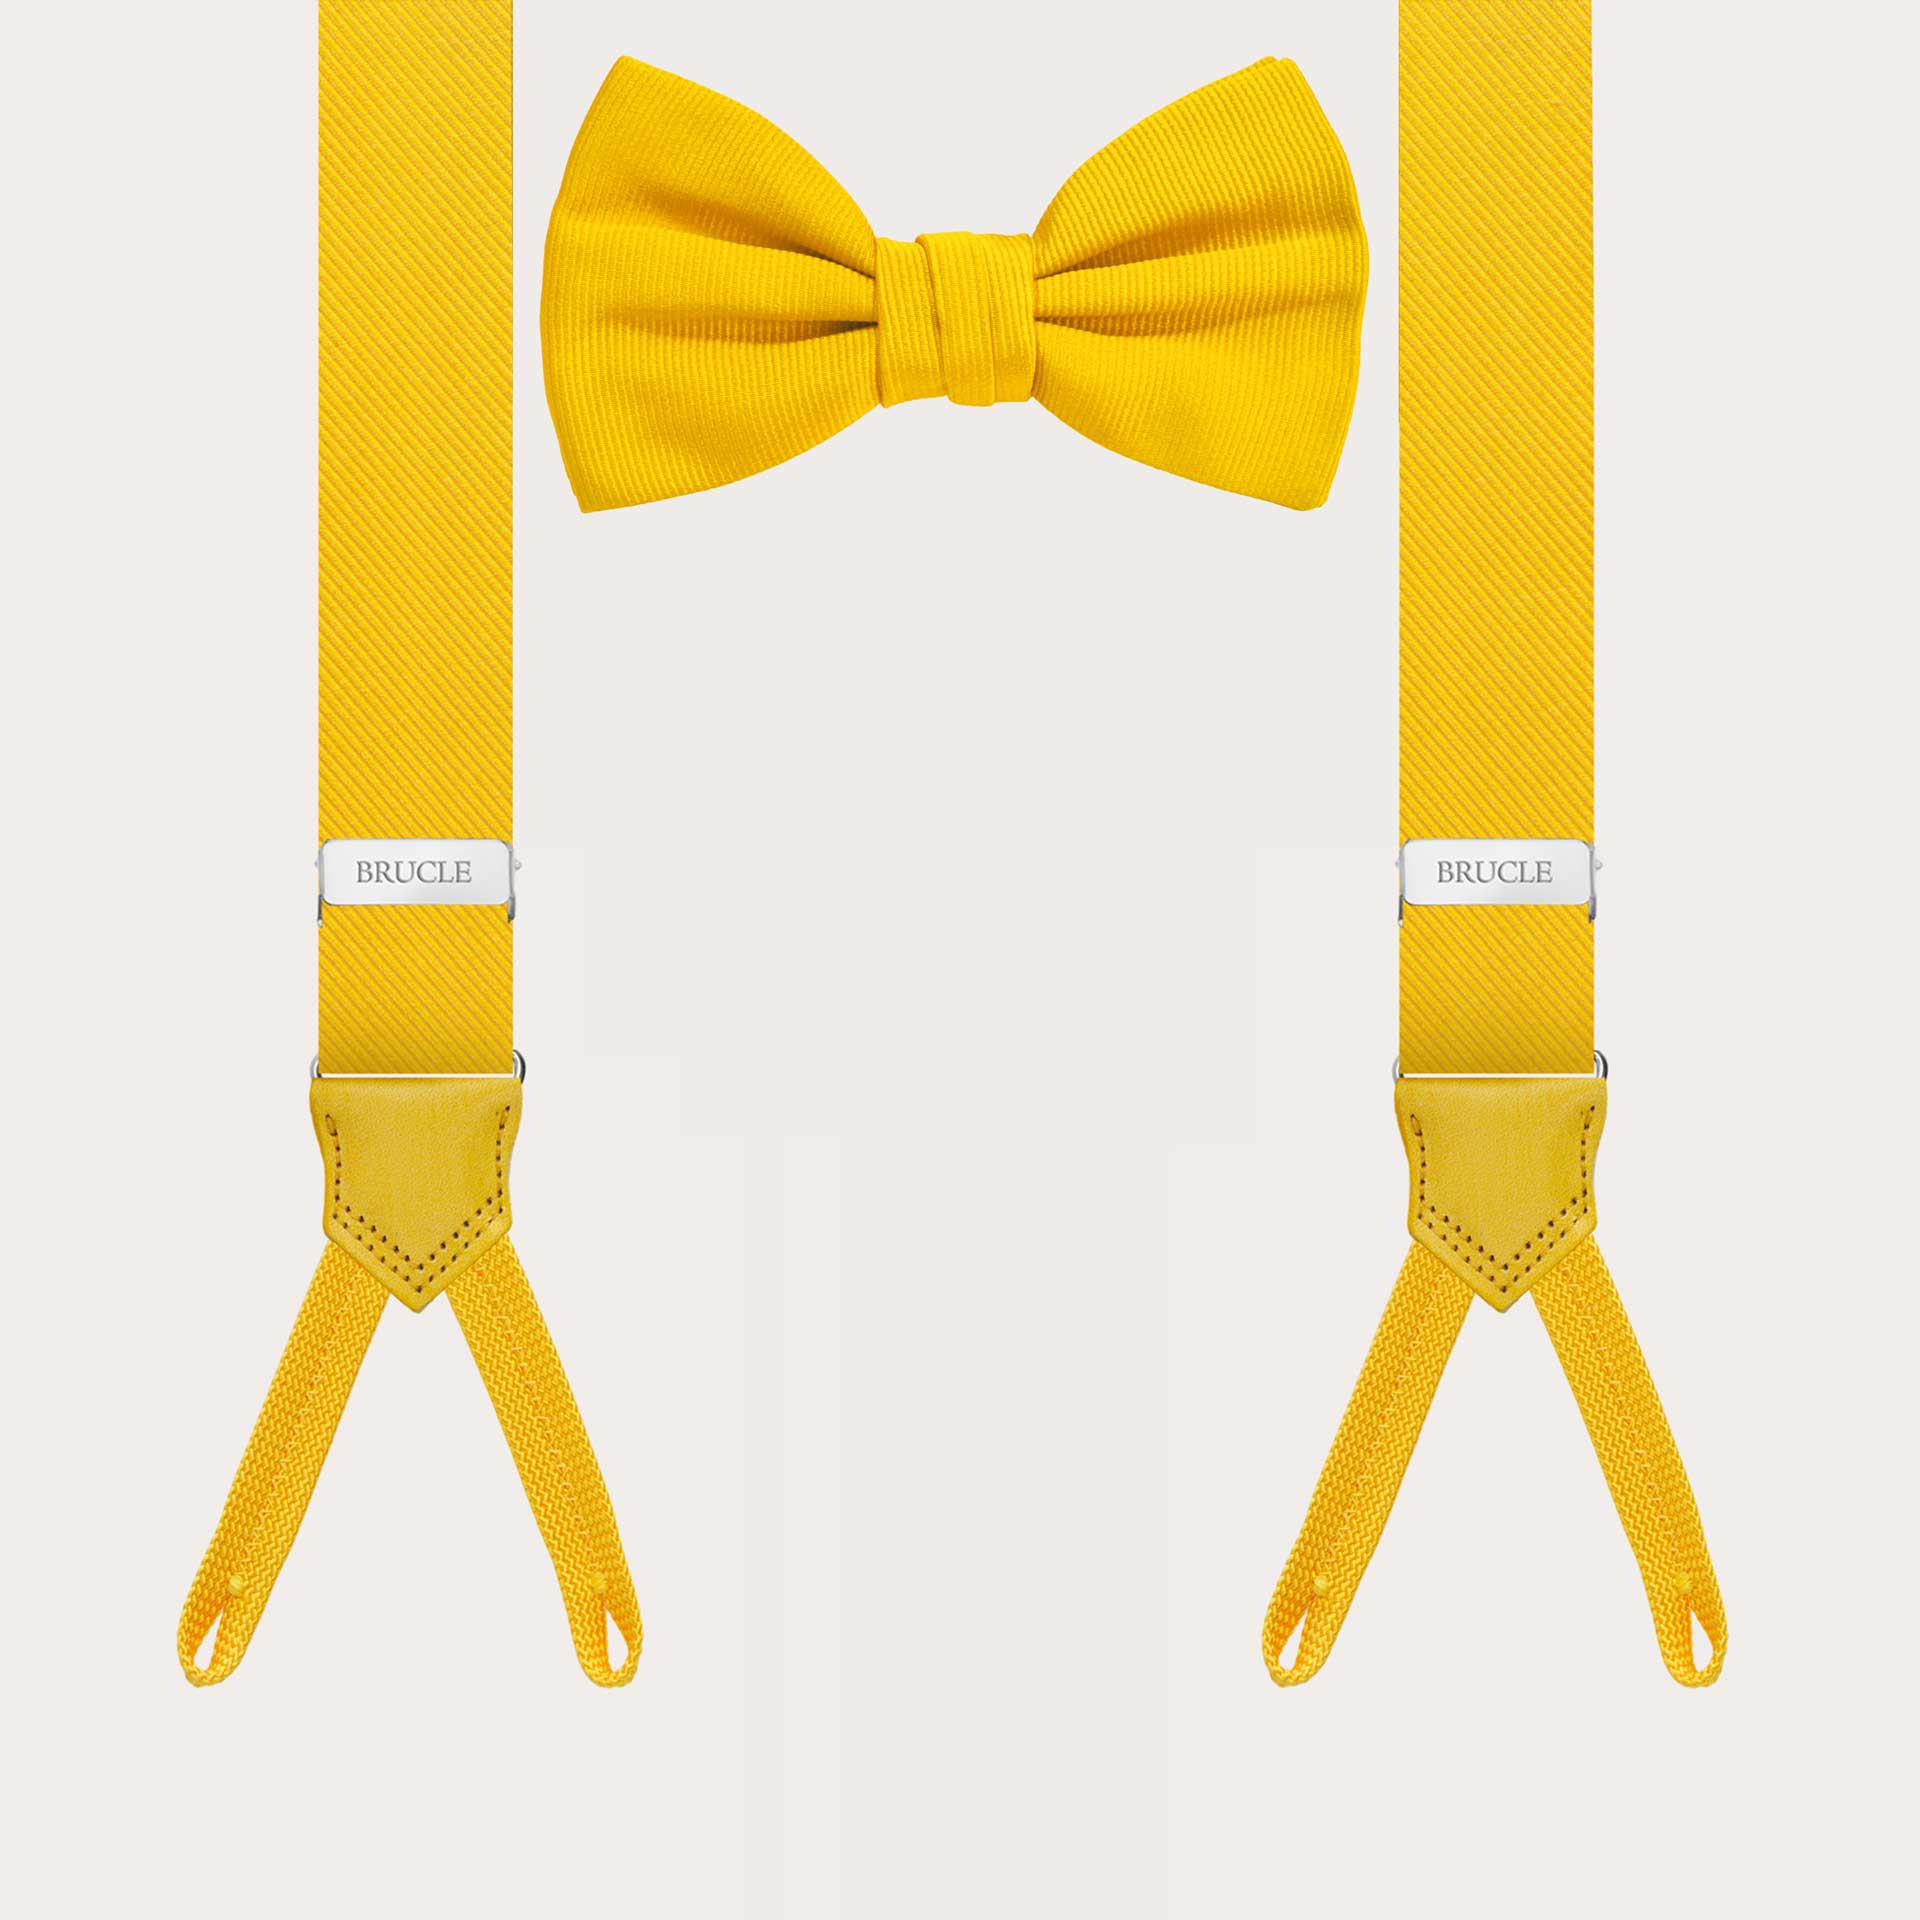 Ensemble coordonné jaune de bretelles étroites pour boutons et nœud papillon en soie.